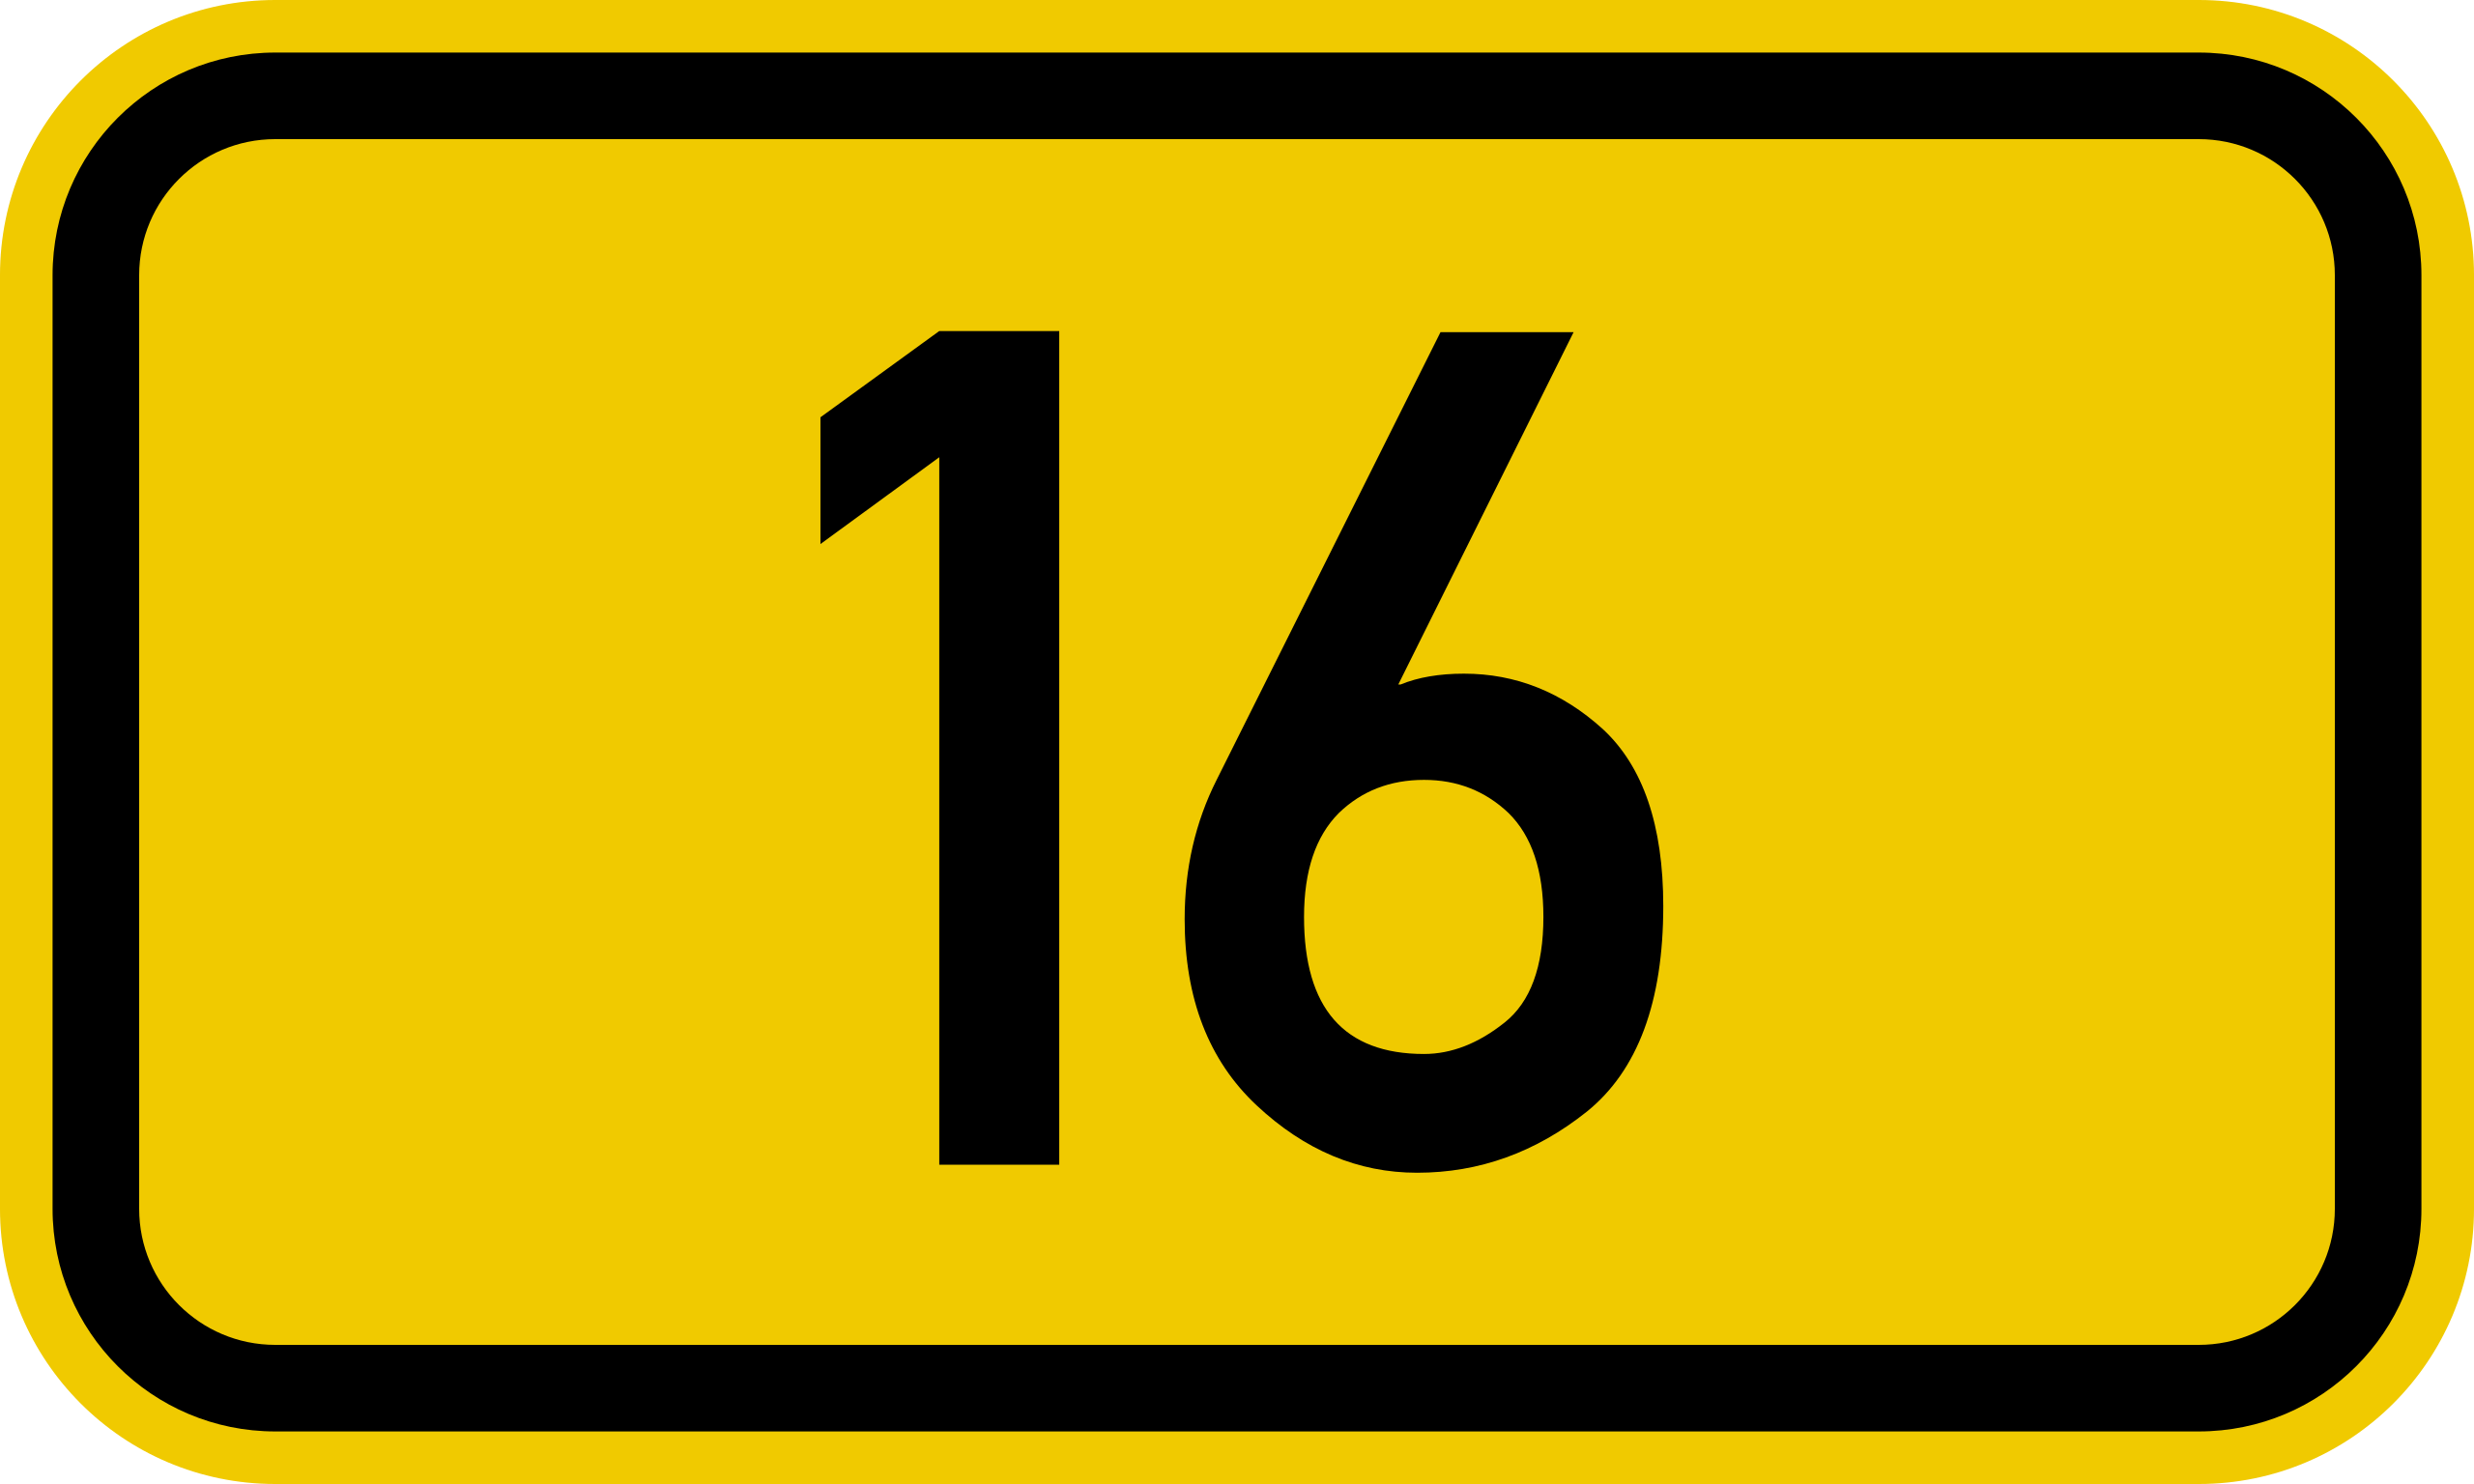 ファイル:Bundesstraße 16 number.svg - Wikipedia